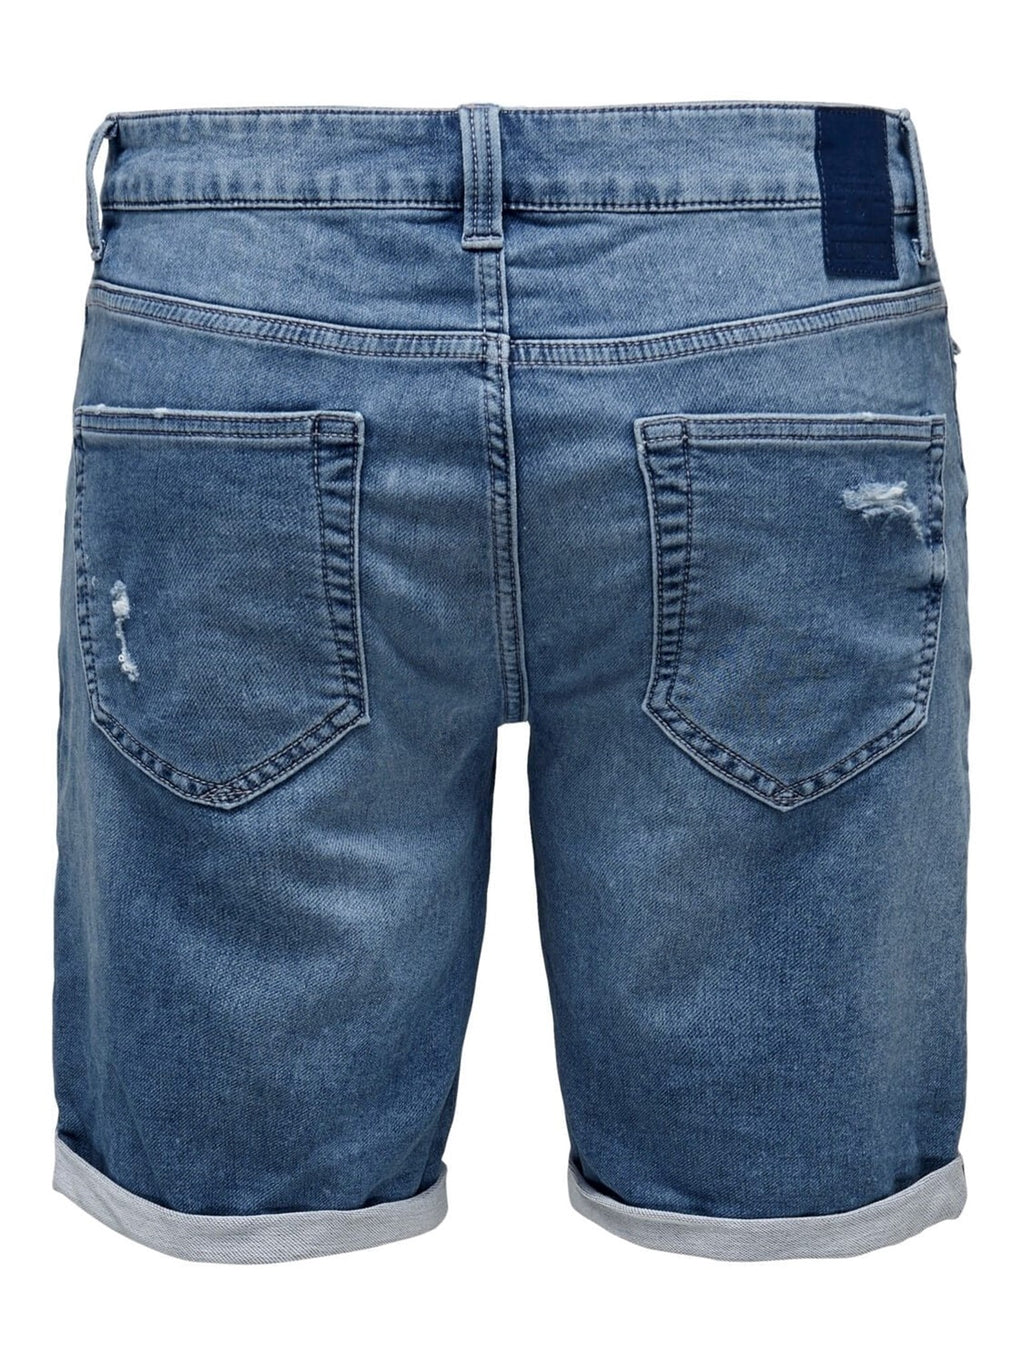 Denim Shorts - Blue Denim (with stretch)